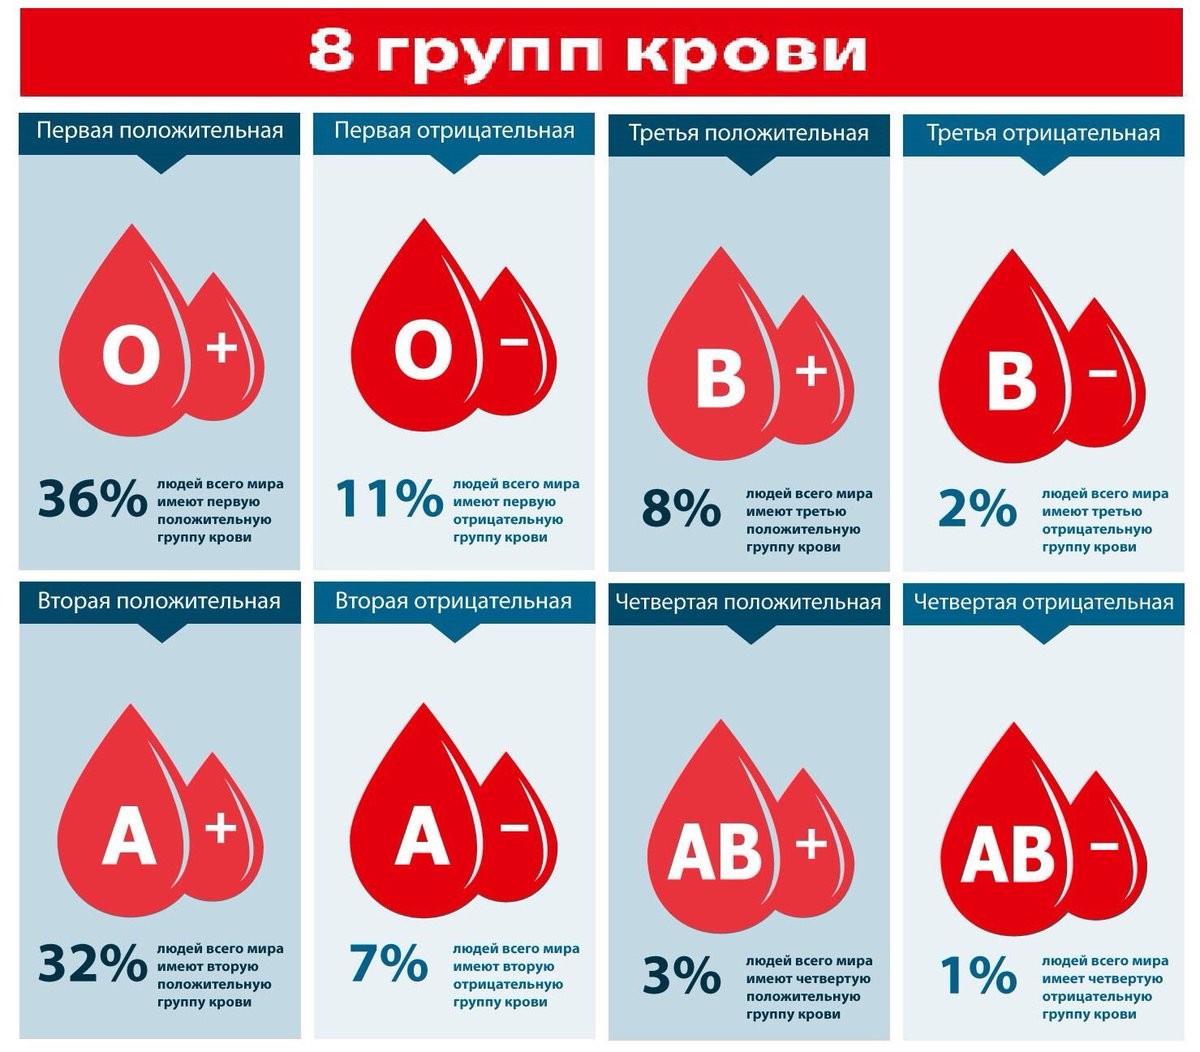 3 Отрицательная группа крови